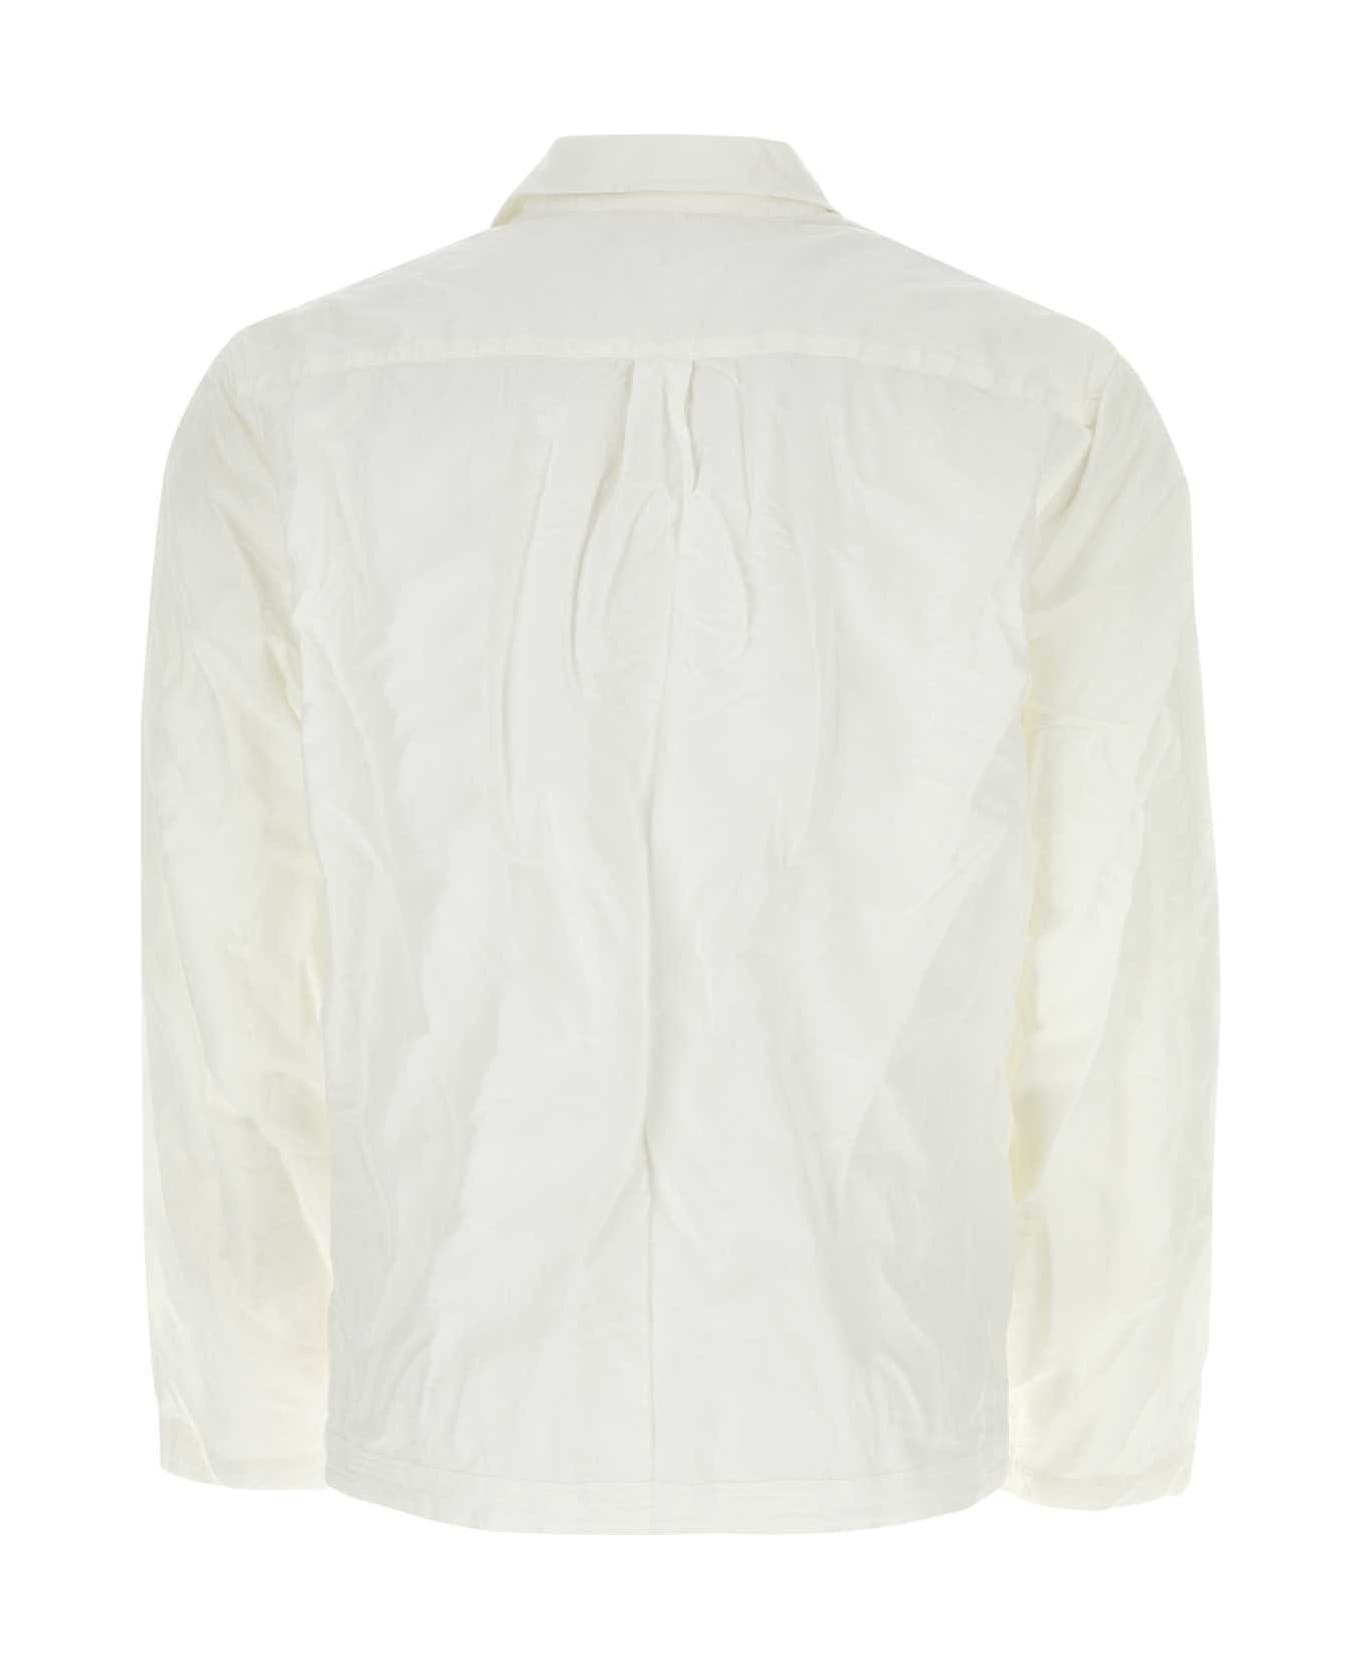 Orlebar Brown White Cotton Blend Roland Shirt - SEAMIST シャツ